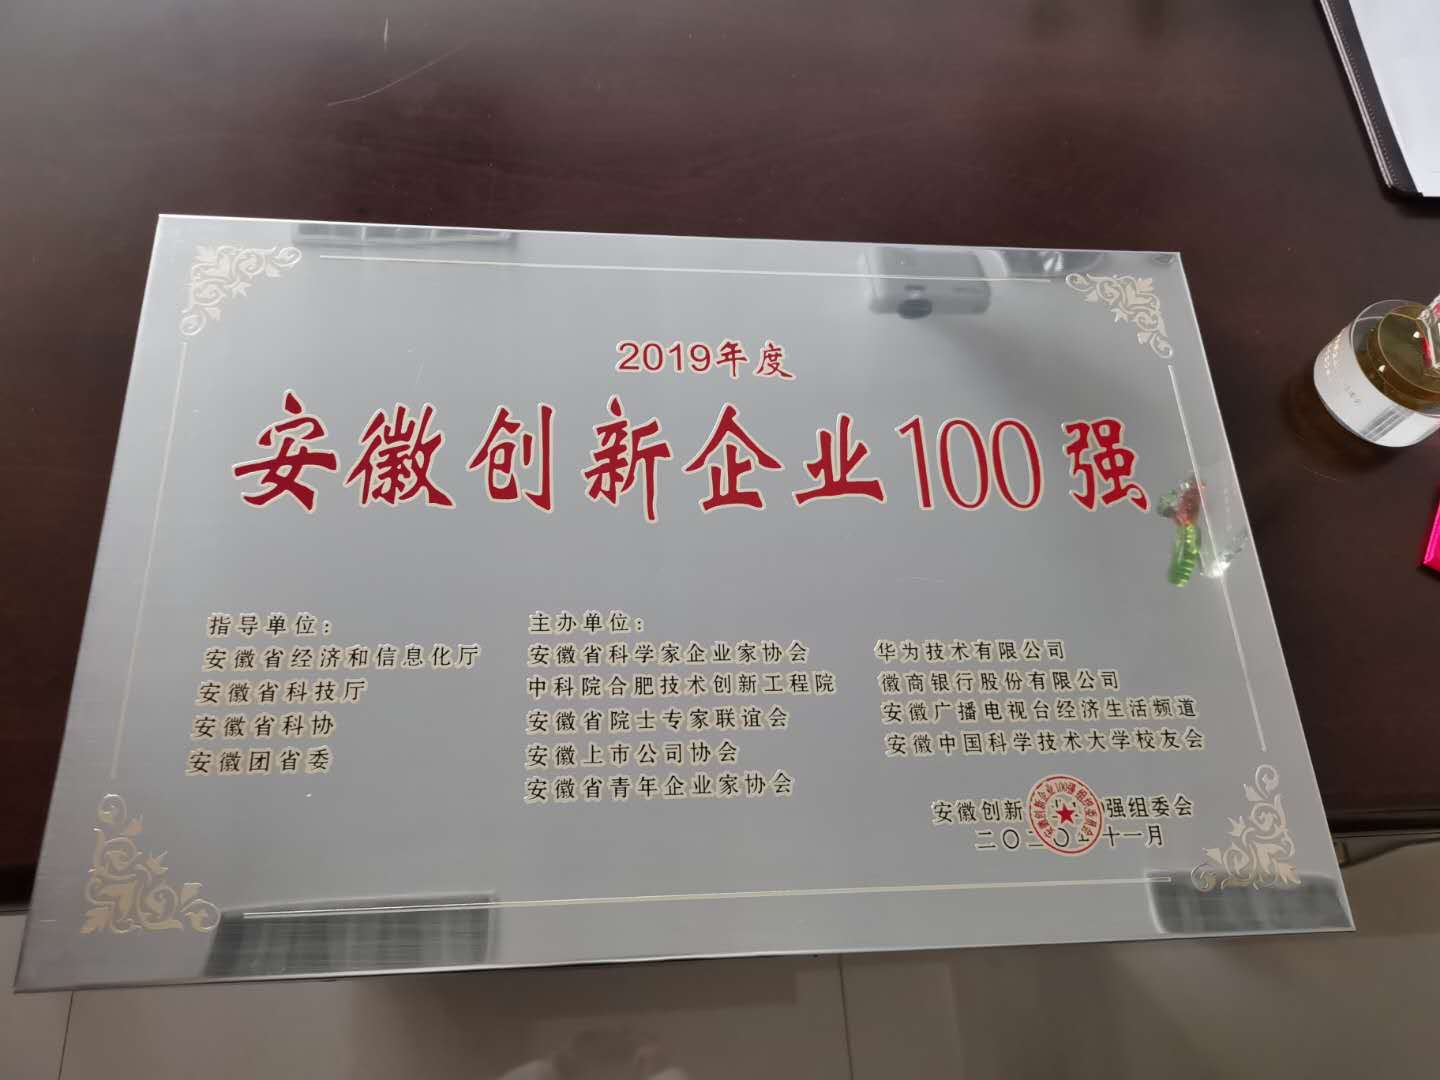 60安徽创新企业100强 (1).jpg